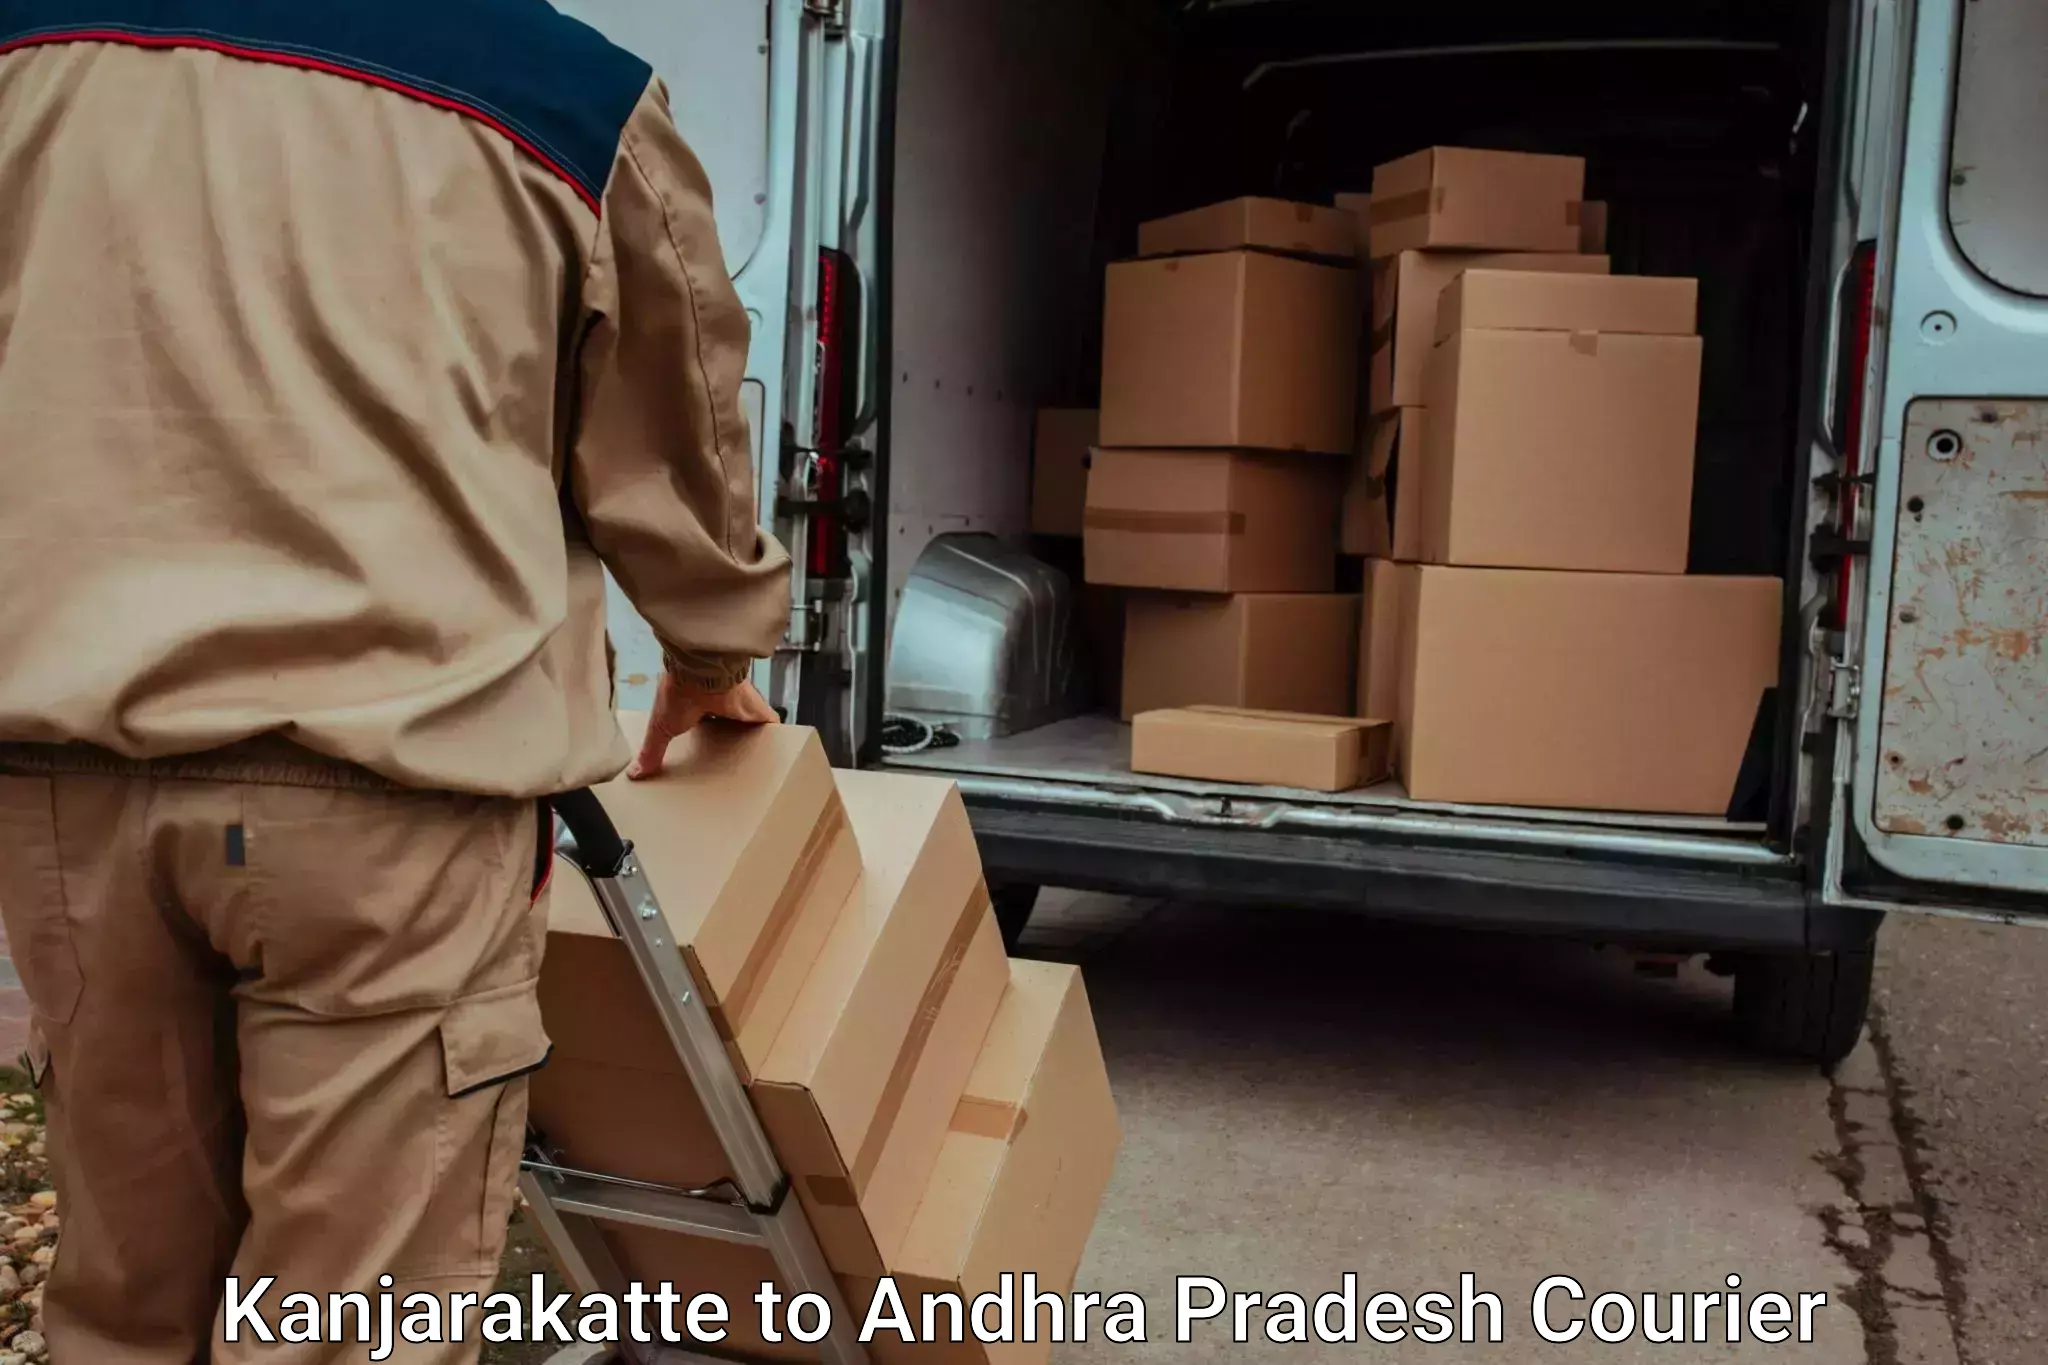 Furniture transport services Kanjarakatte to Pathapatnam